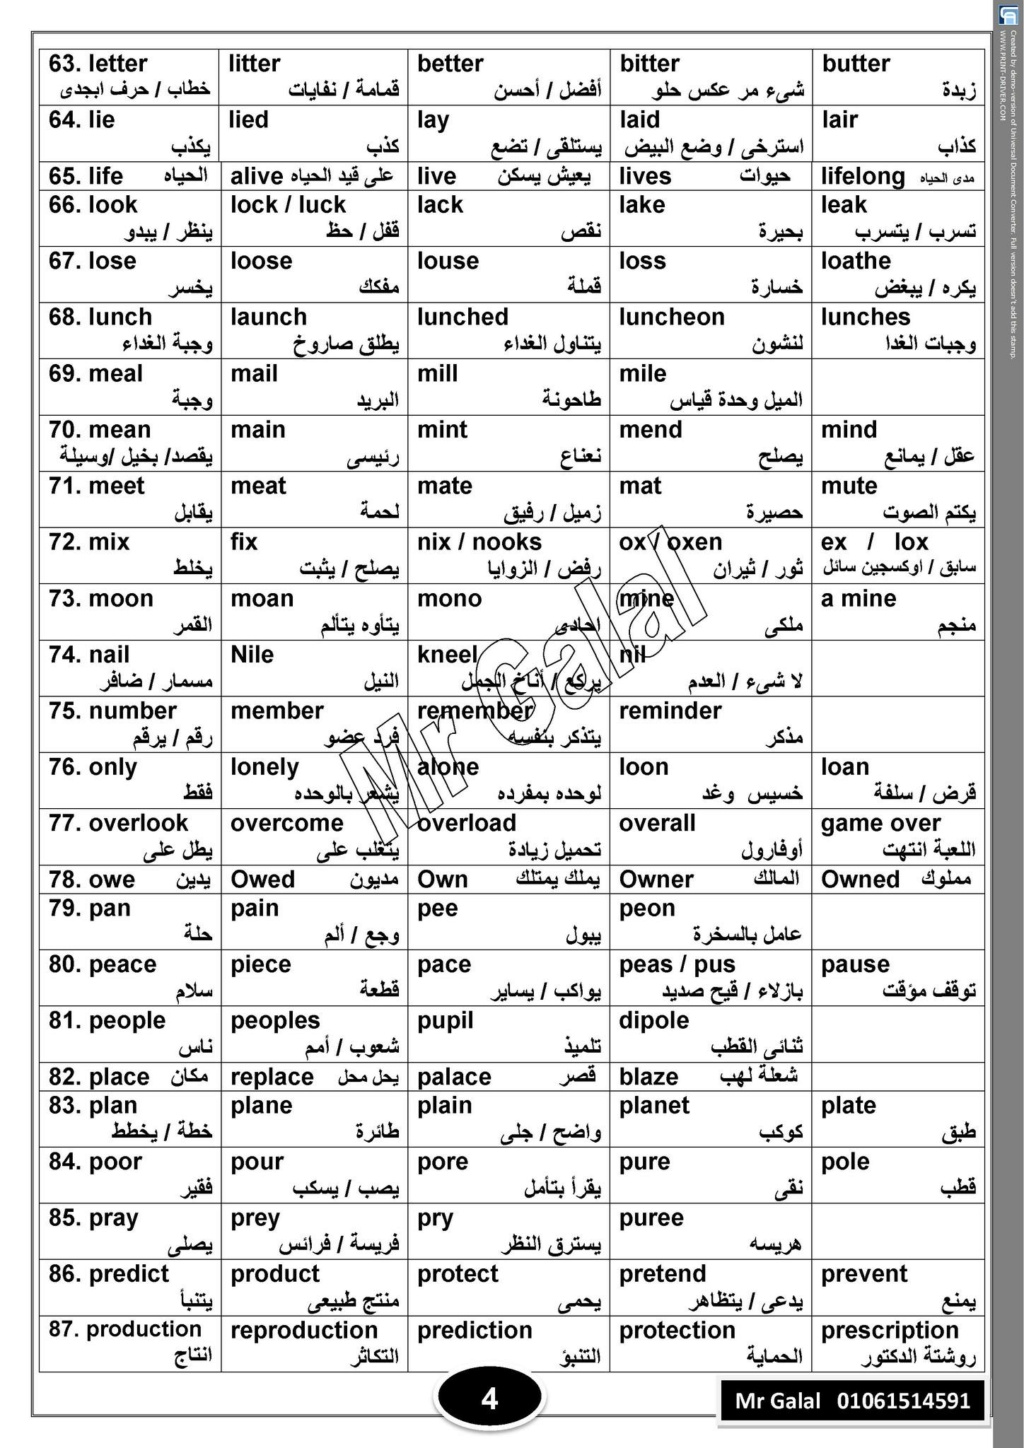 135 مجموعة كلمات انجليزي متشابهة فى الحروف ومختلفة فى المعنى ومترجمه بالعربى للثانوية العامة 4343